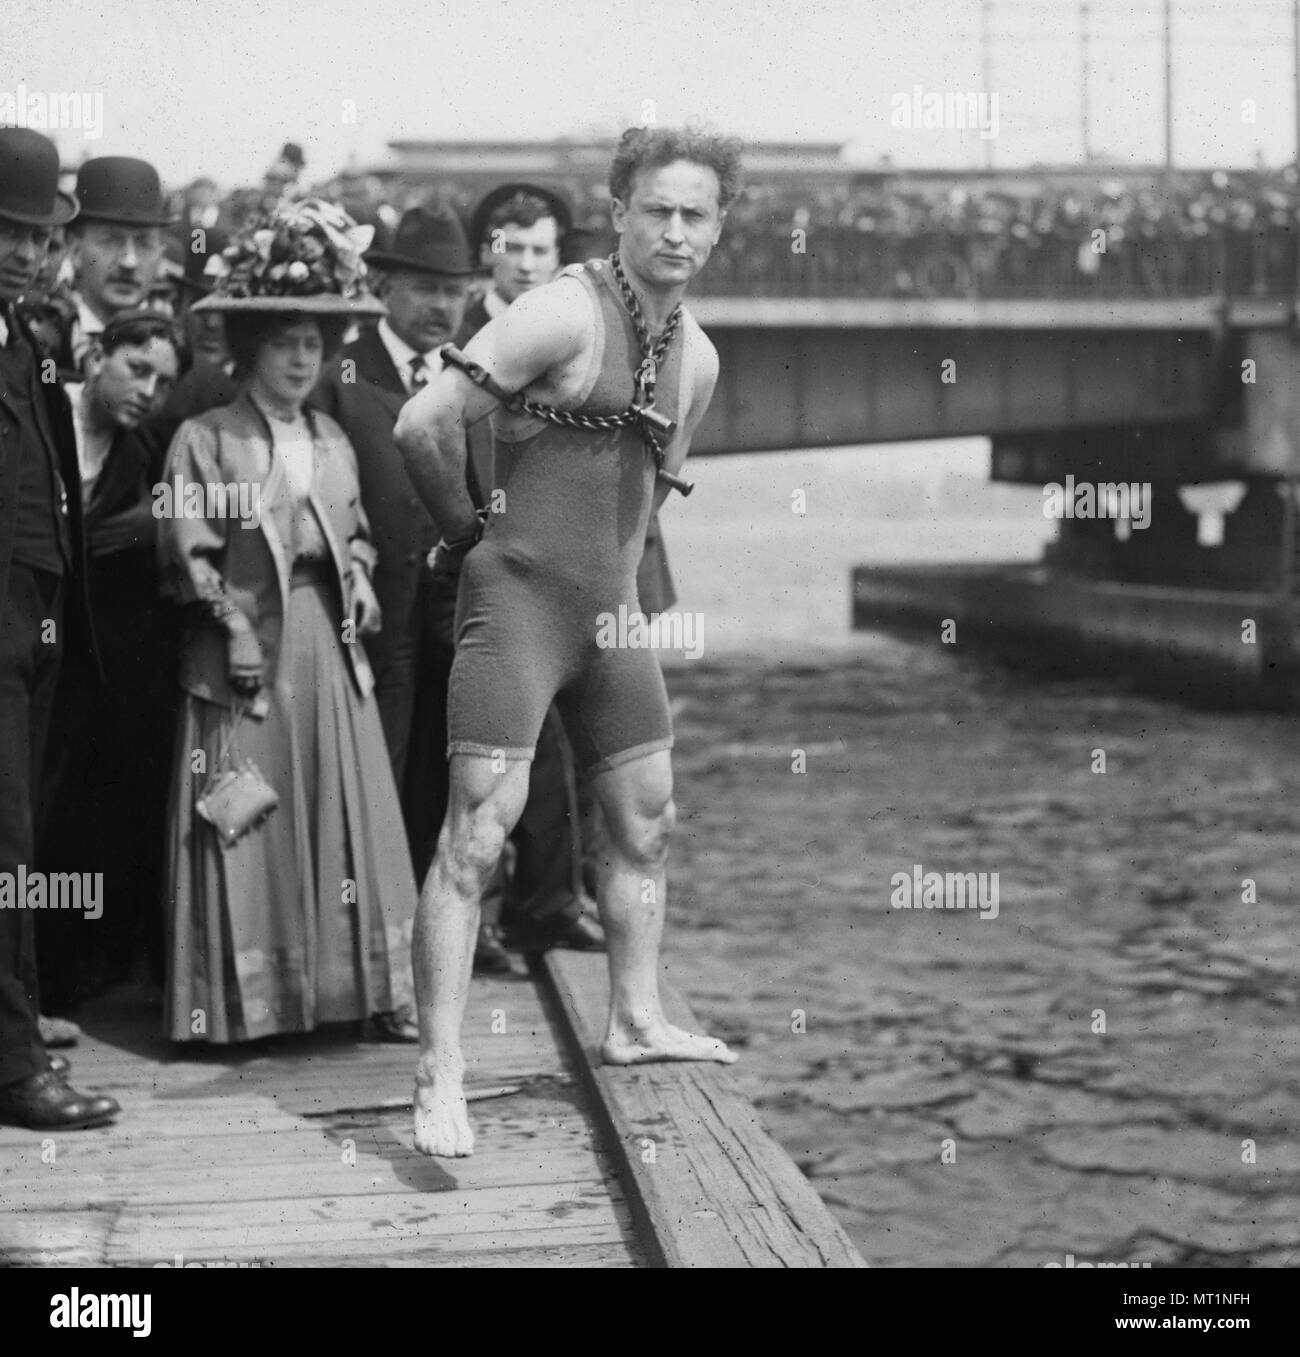 Des sauts d'Houdini, 1908 Pont de Harvard, Houdini debout près du côté de la Charles River, enchaînée et des menottes. Harry Houdini (1874 - 1926) née à l'austro-hongrois de l'évasion de l'Amérique, illusionniste et stunt performer Banque D'Images